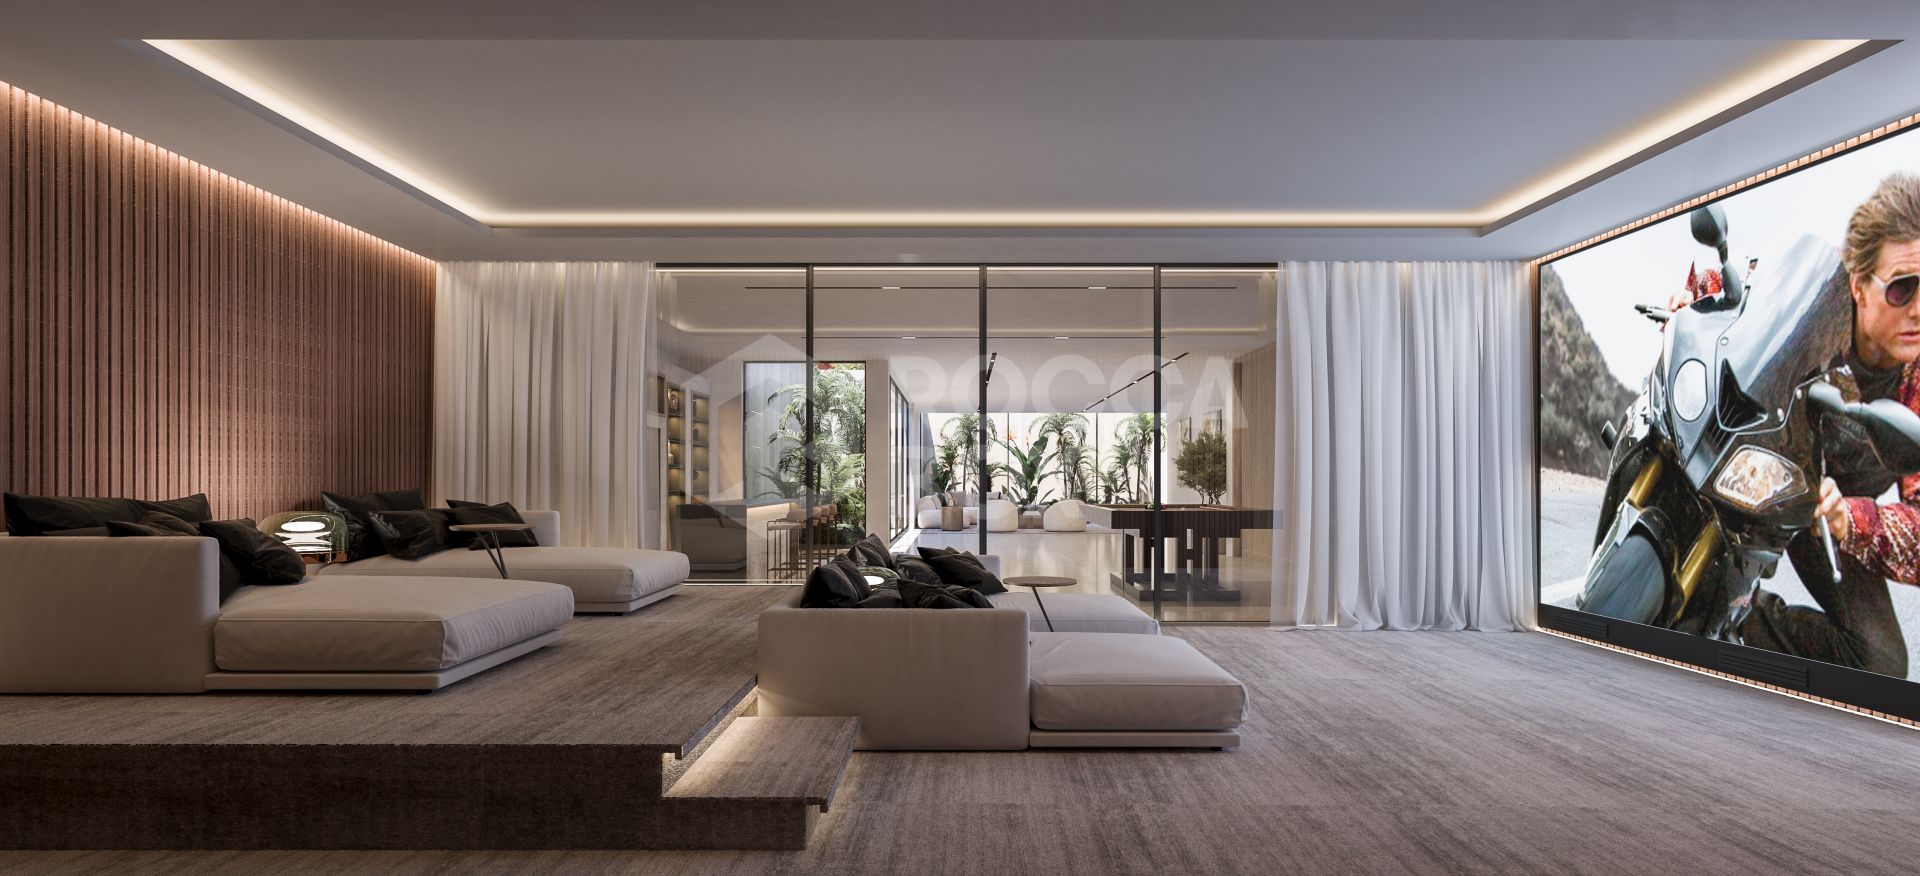 BUILDING LICENCE GRANTED! 5 Luxury Villas in Camoján, Marbella